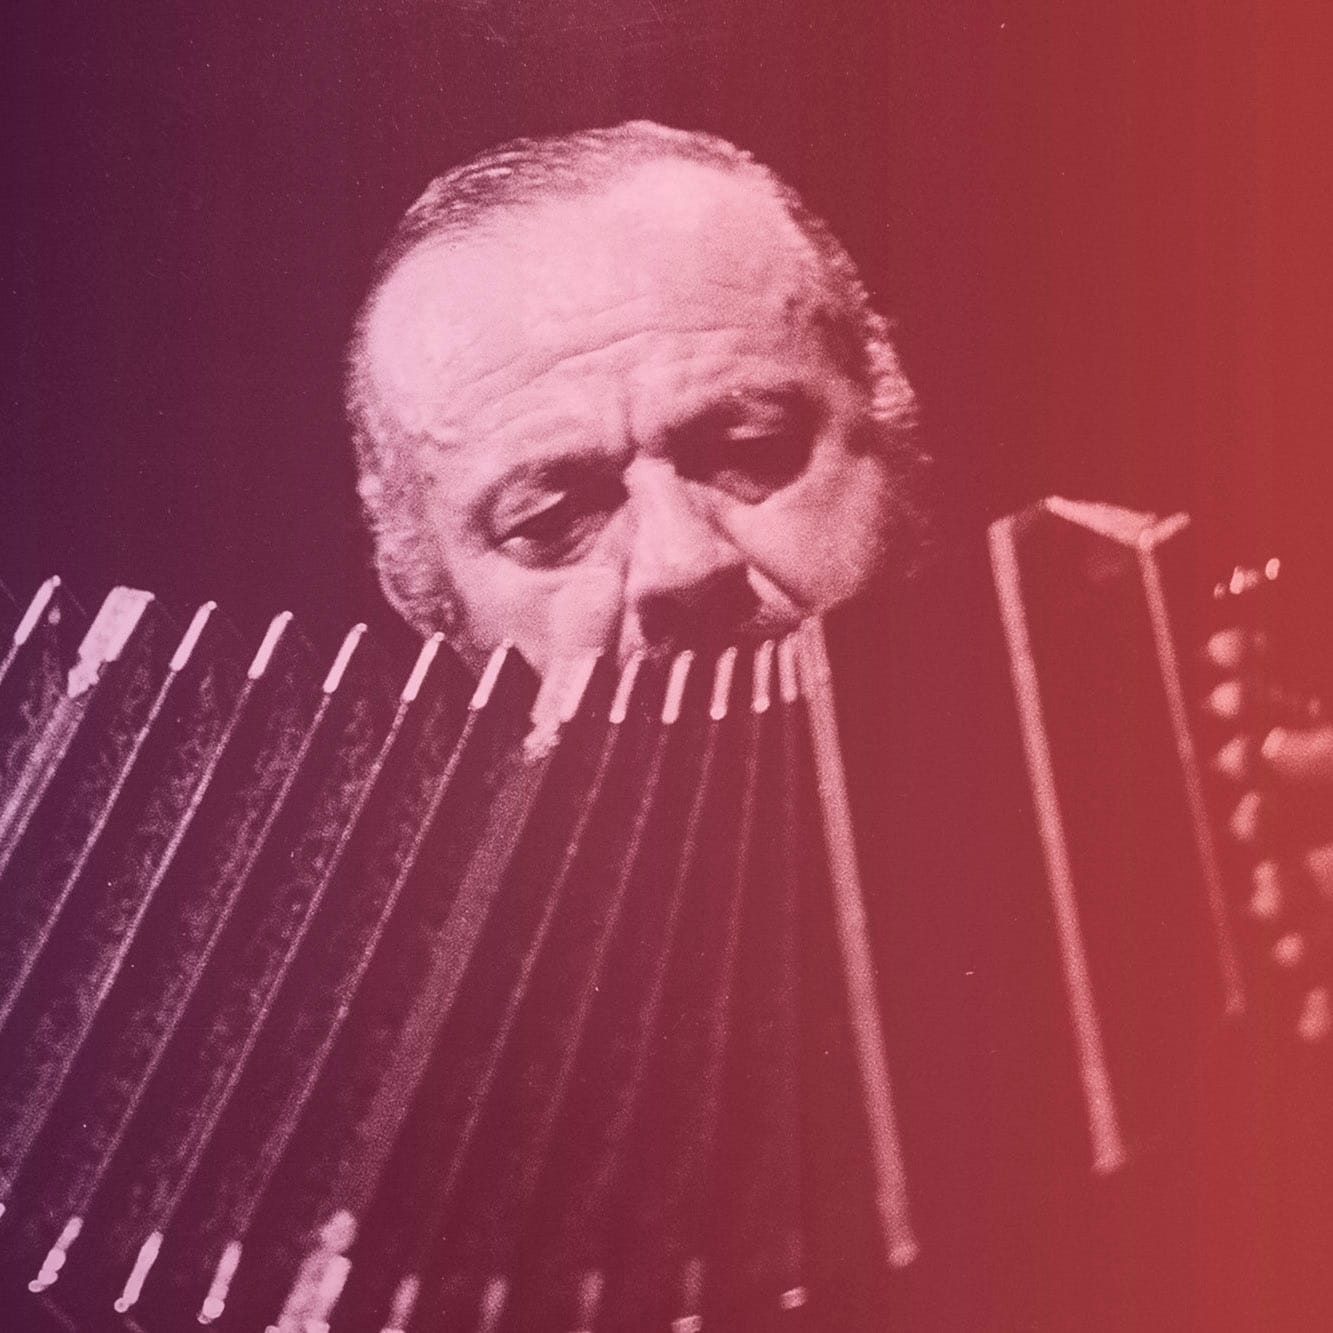 Semana Piazzolla: Mar del Plata homenajea a Astor en el cierre del centenario de su nacimiento